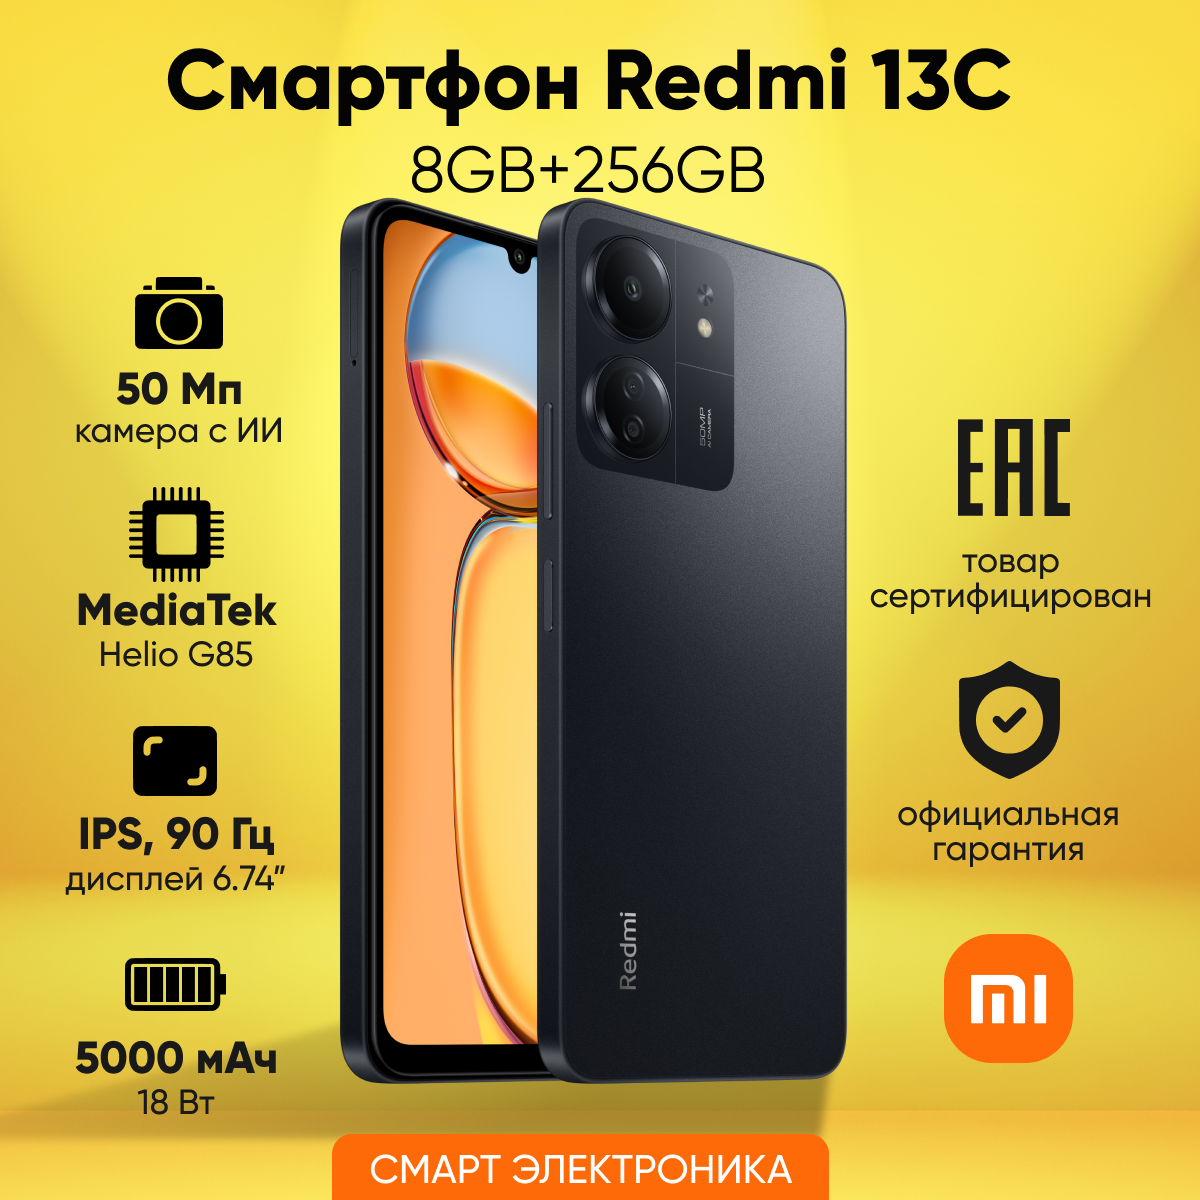 Смартфон Redmi 13C 8GB+256GB Black